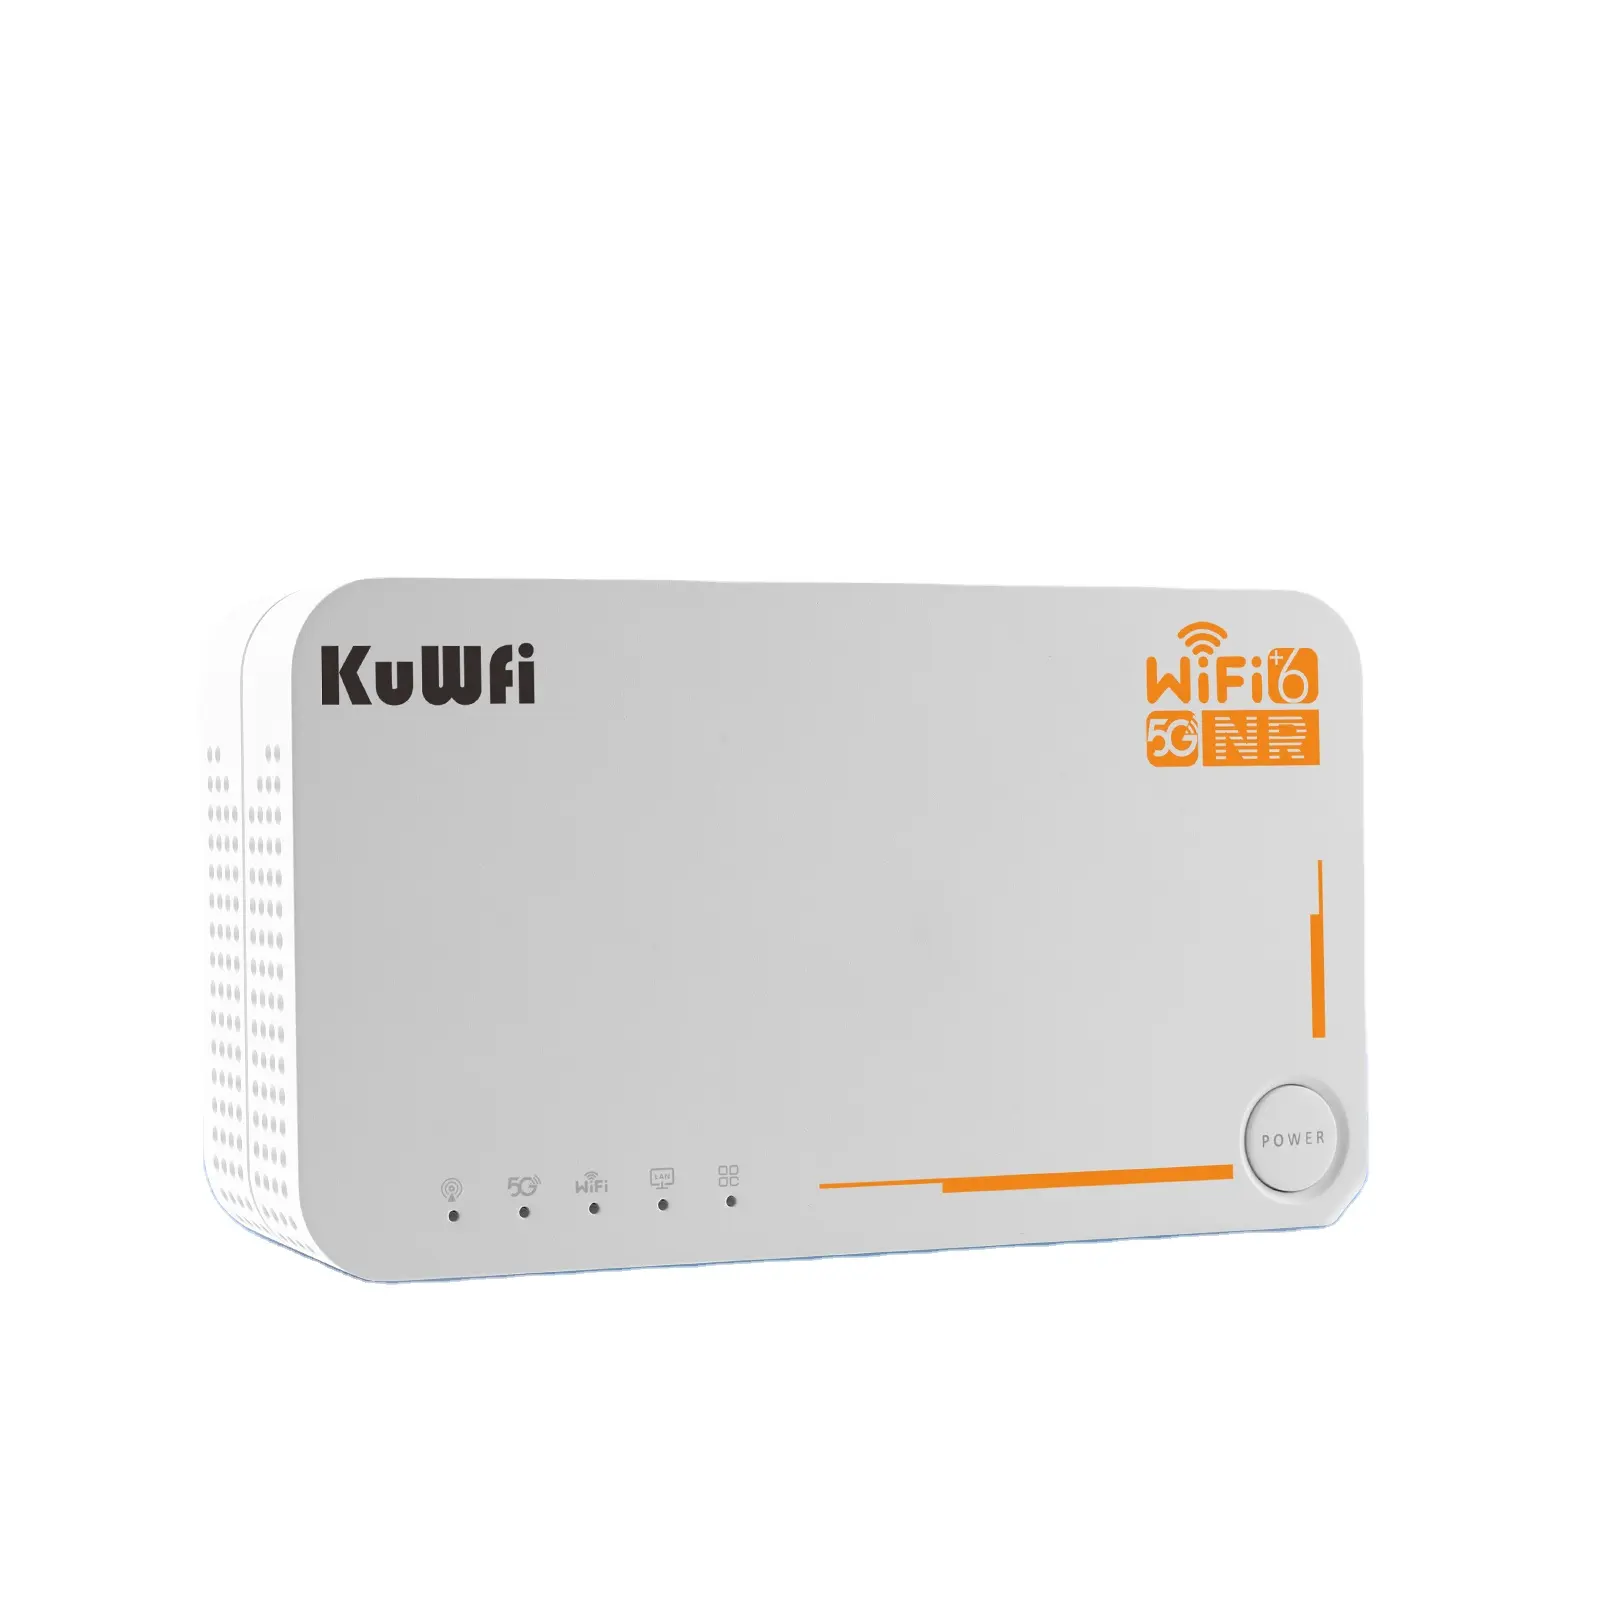 Bande di noi KuWFi ad alta velocità 5g cpe rauter wifi router 5g 4000mAh 32 gli utenti supportano 5g full band wifi6 router con slot per sim card